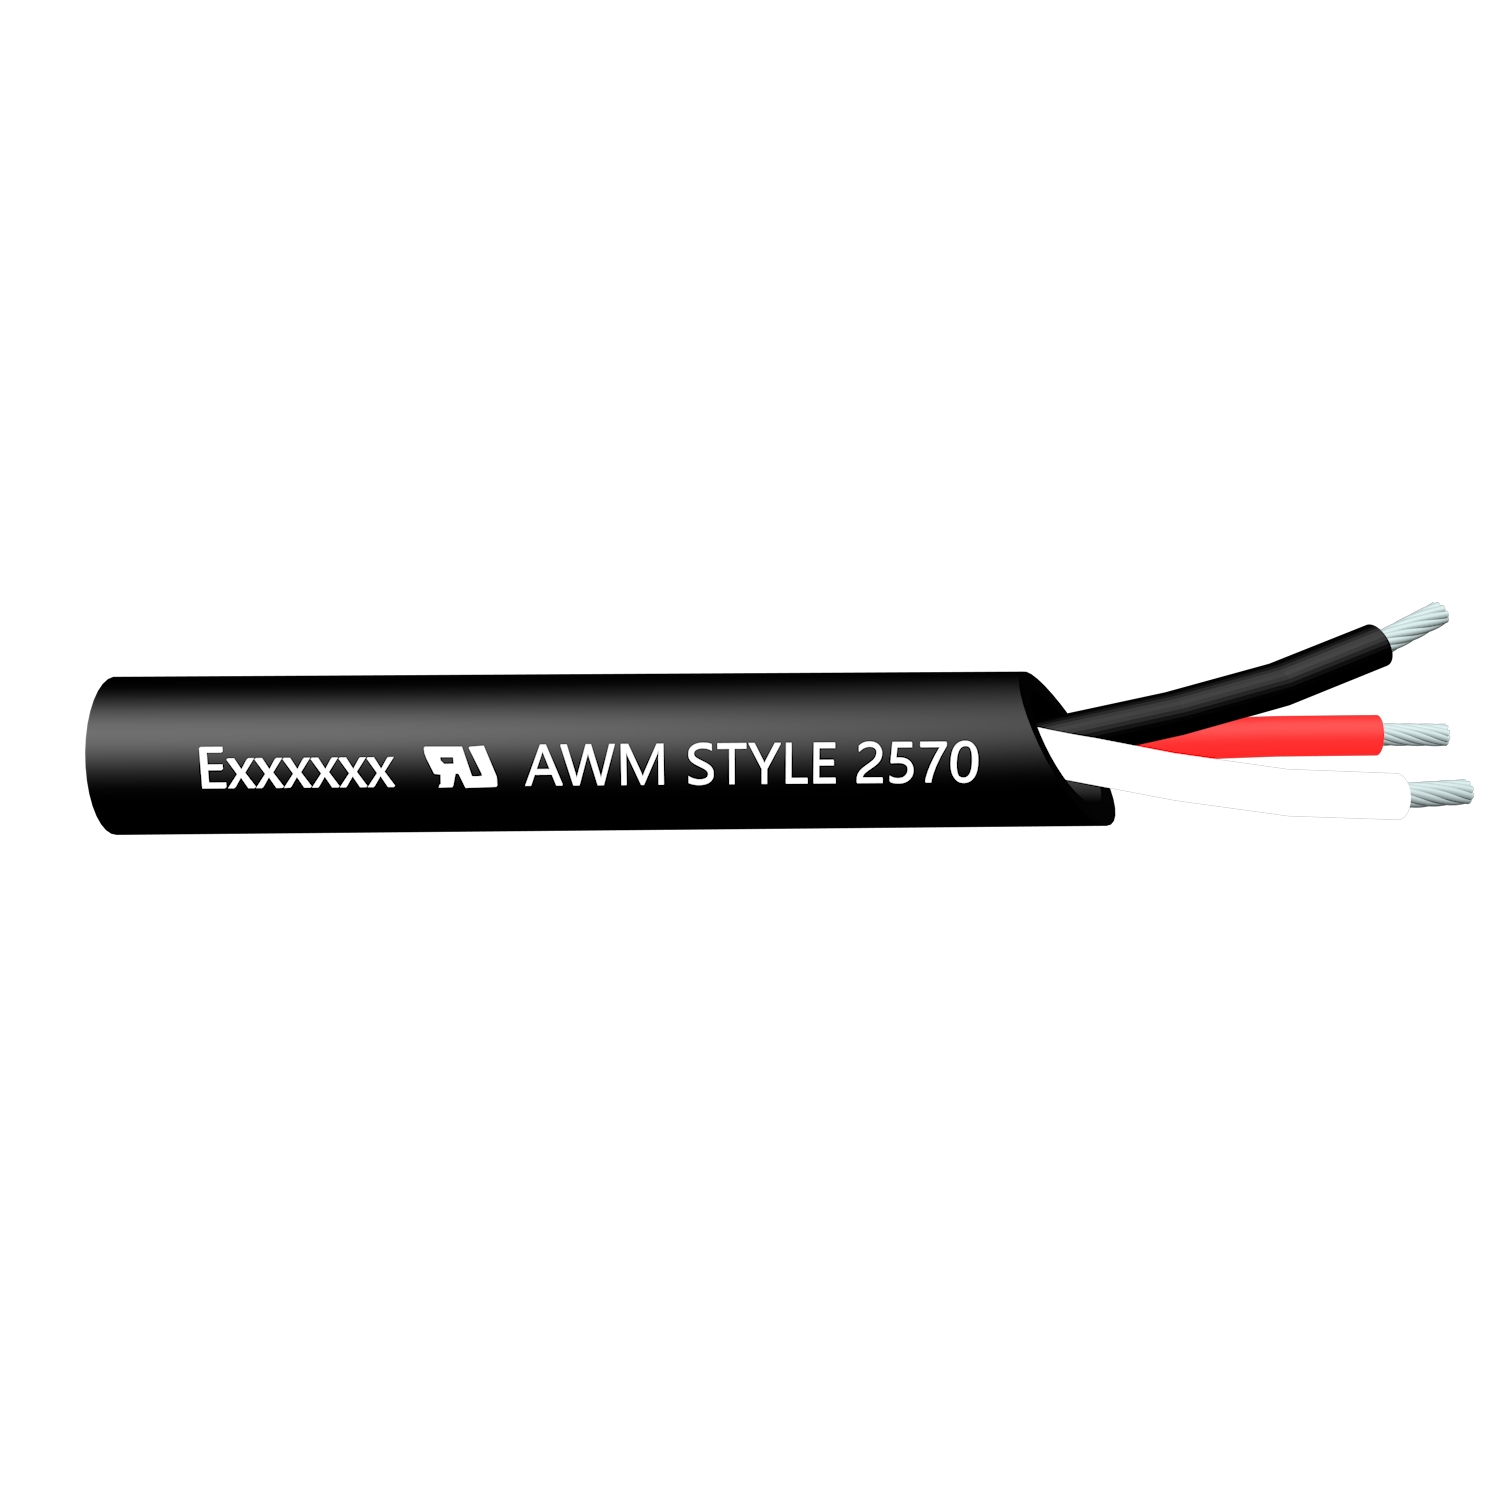 UL AWM 2570 de alta flexibilidad sin apantallar 80 ℃ 600V o 1000V VW-1